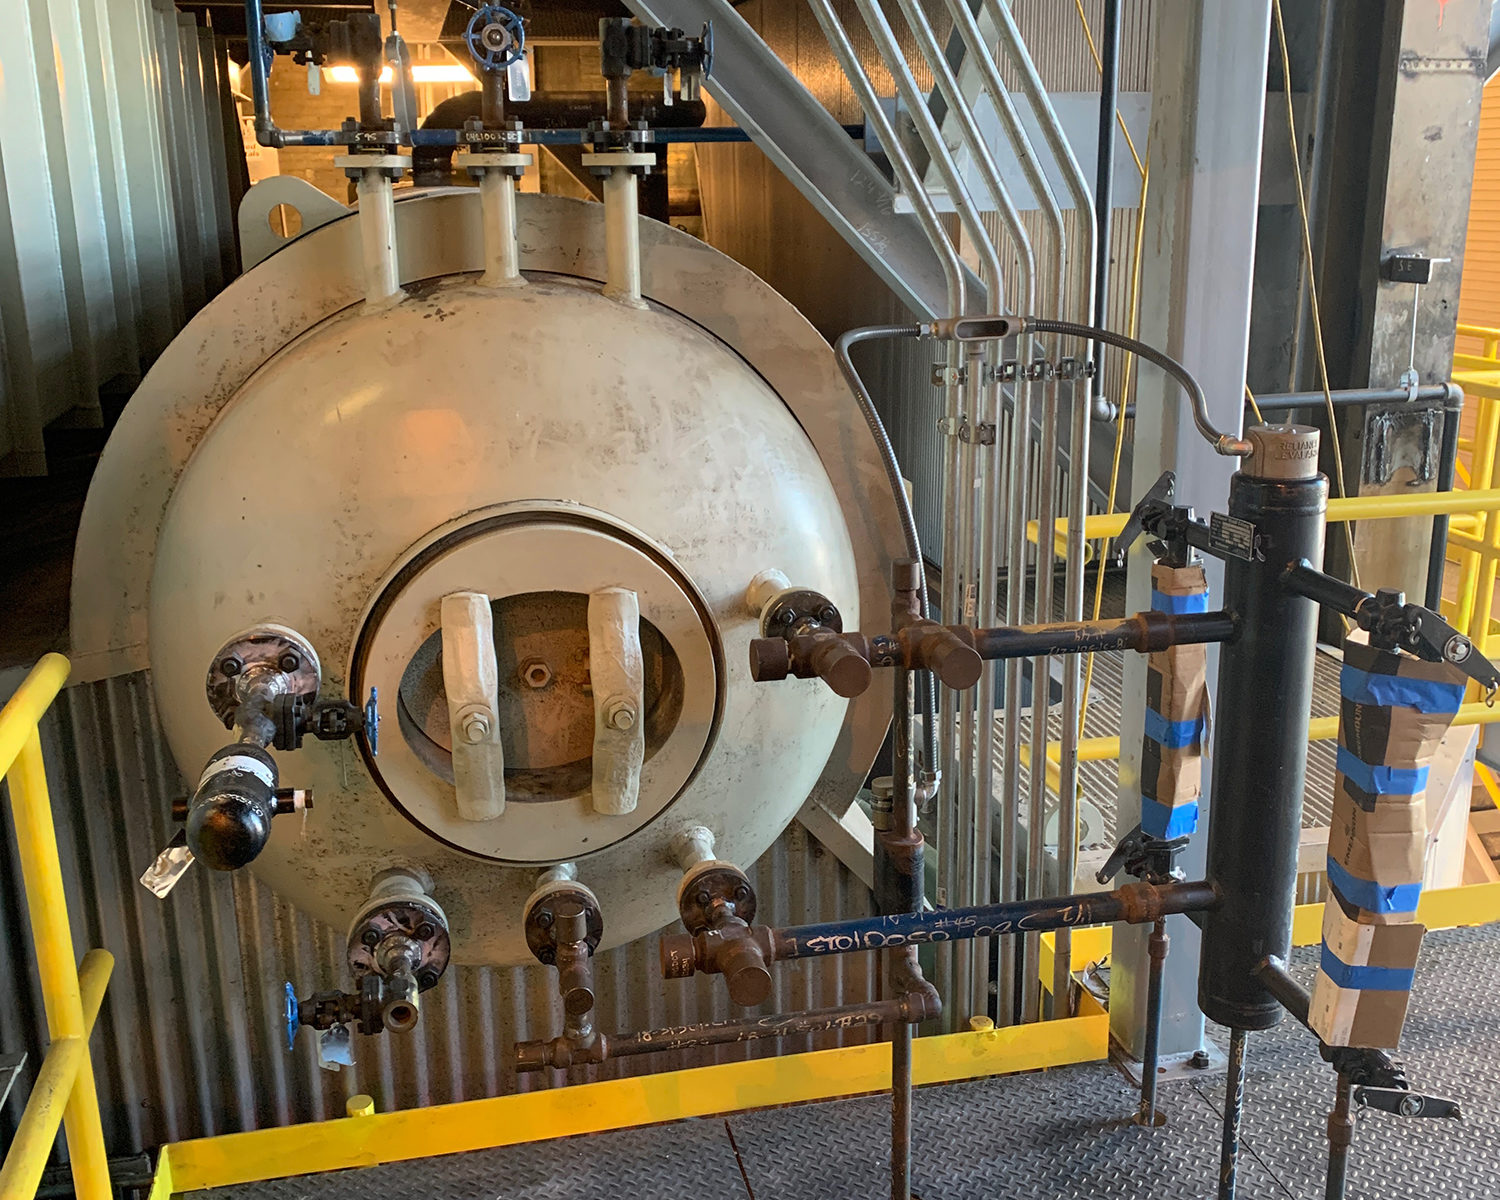 Boiler 12 at Virginia Tech